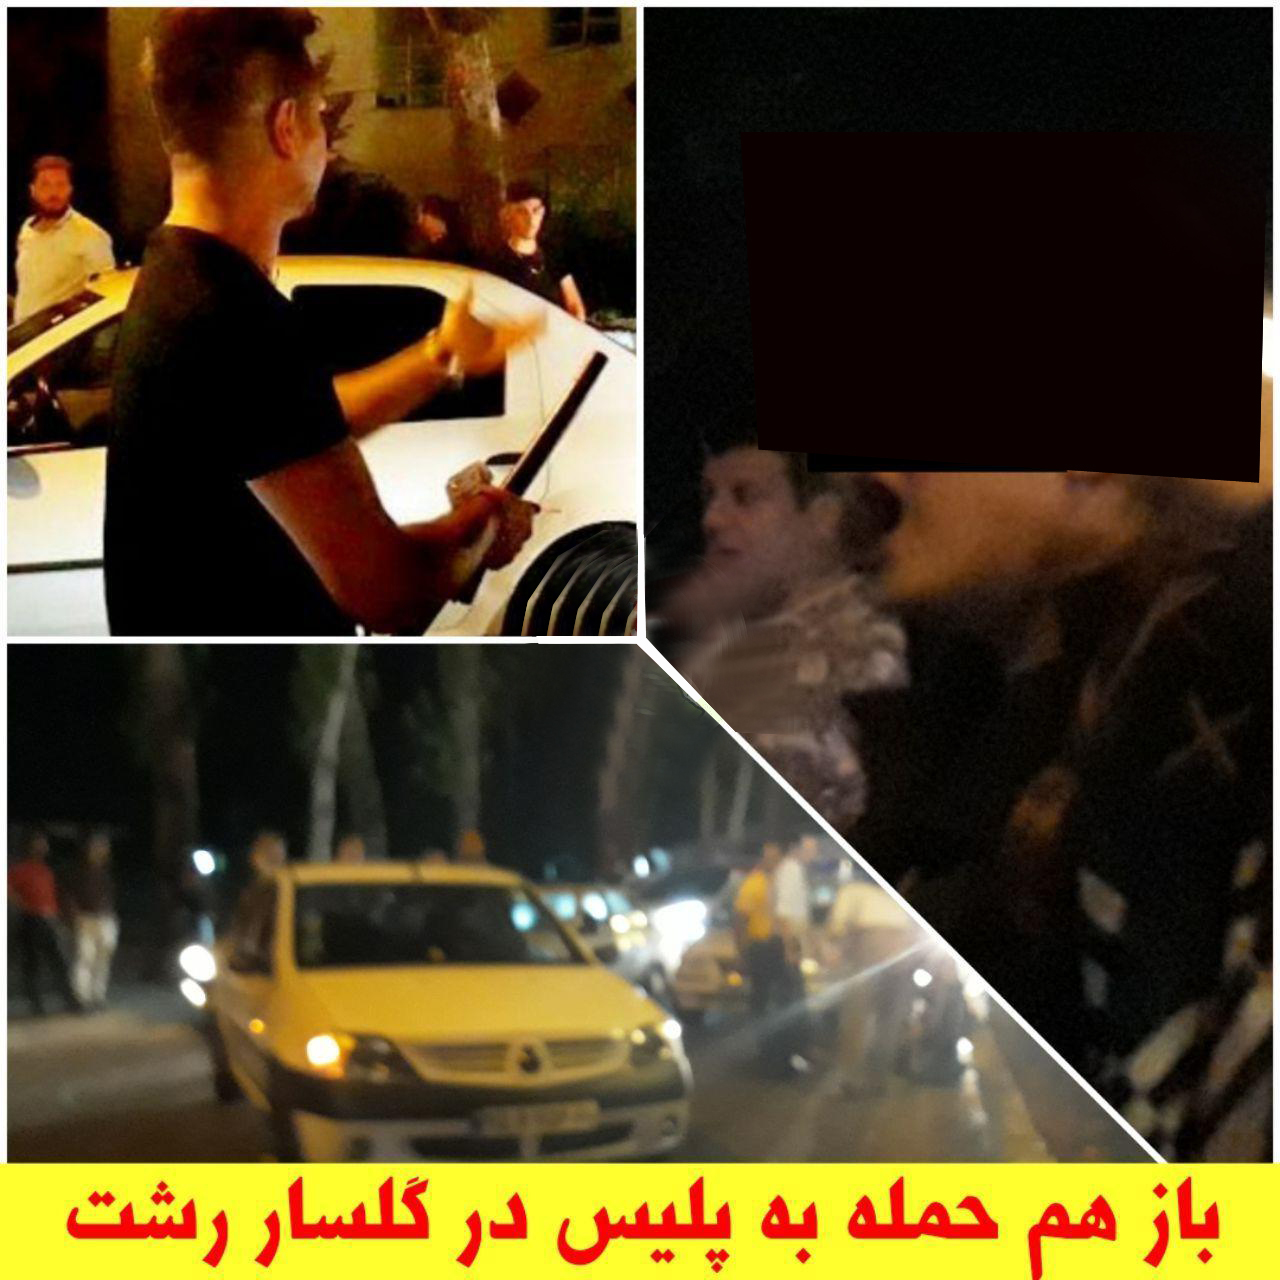 حمله به پلیس با باتوم در گلسار رشت/ دسیسه‌ای برای رواج عربده کشی و فحاشی + تصاویر